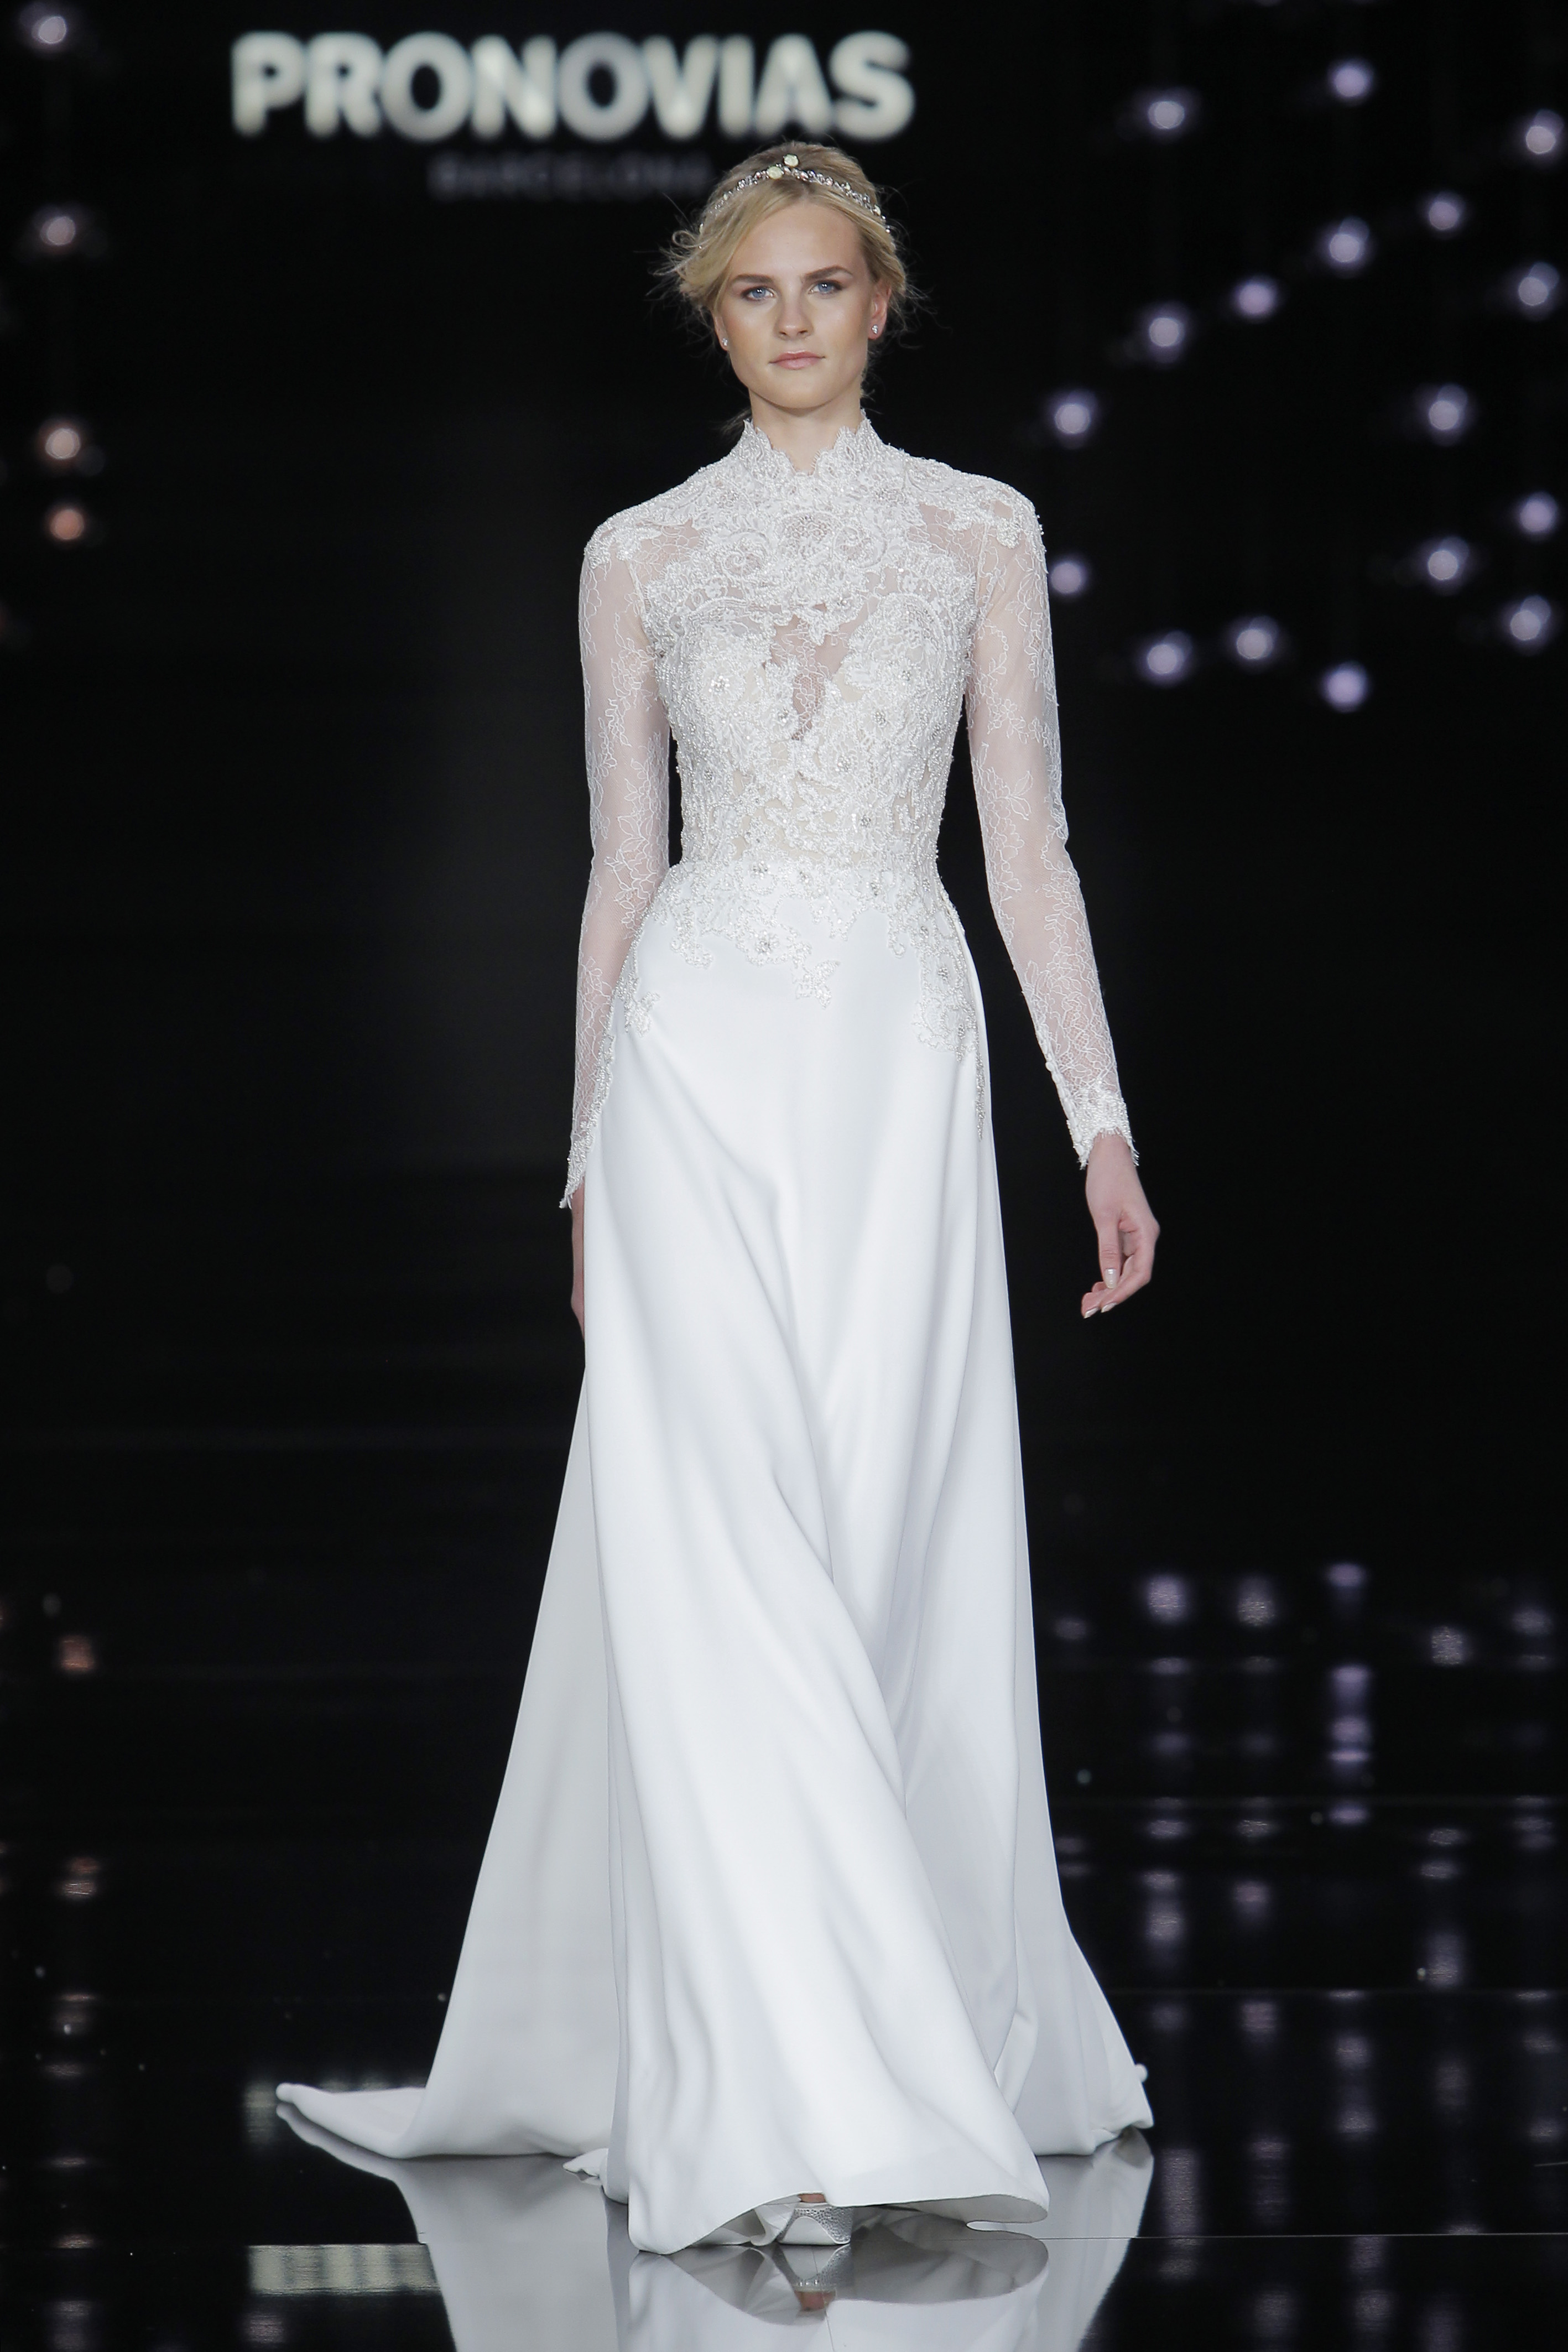 Credits: Barcelona Bridal Fashion Week
<a href="http://zankyou.9nl.de/n3ig" target="_blank"> Faça a sua marcação para experimentar este vestido! </a>